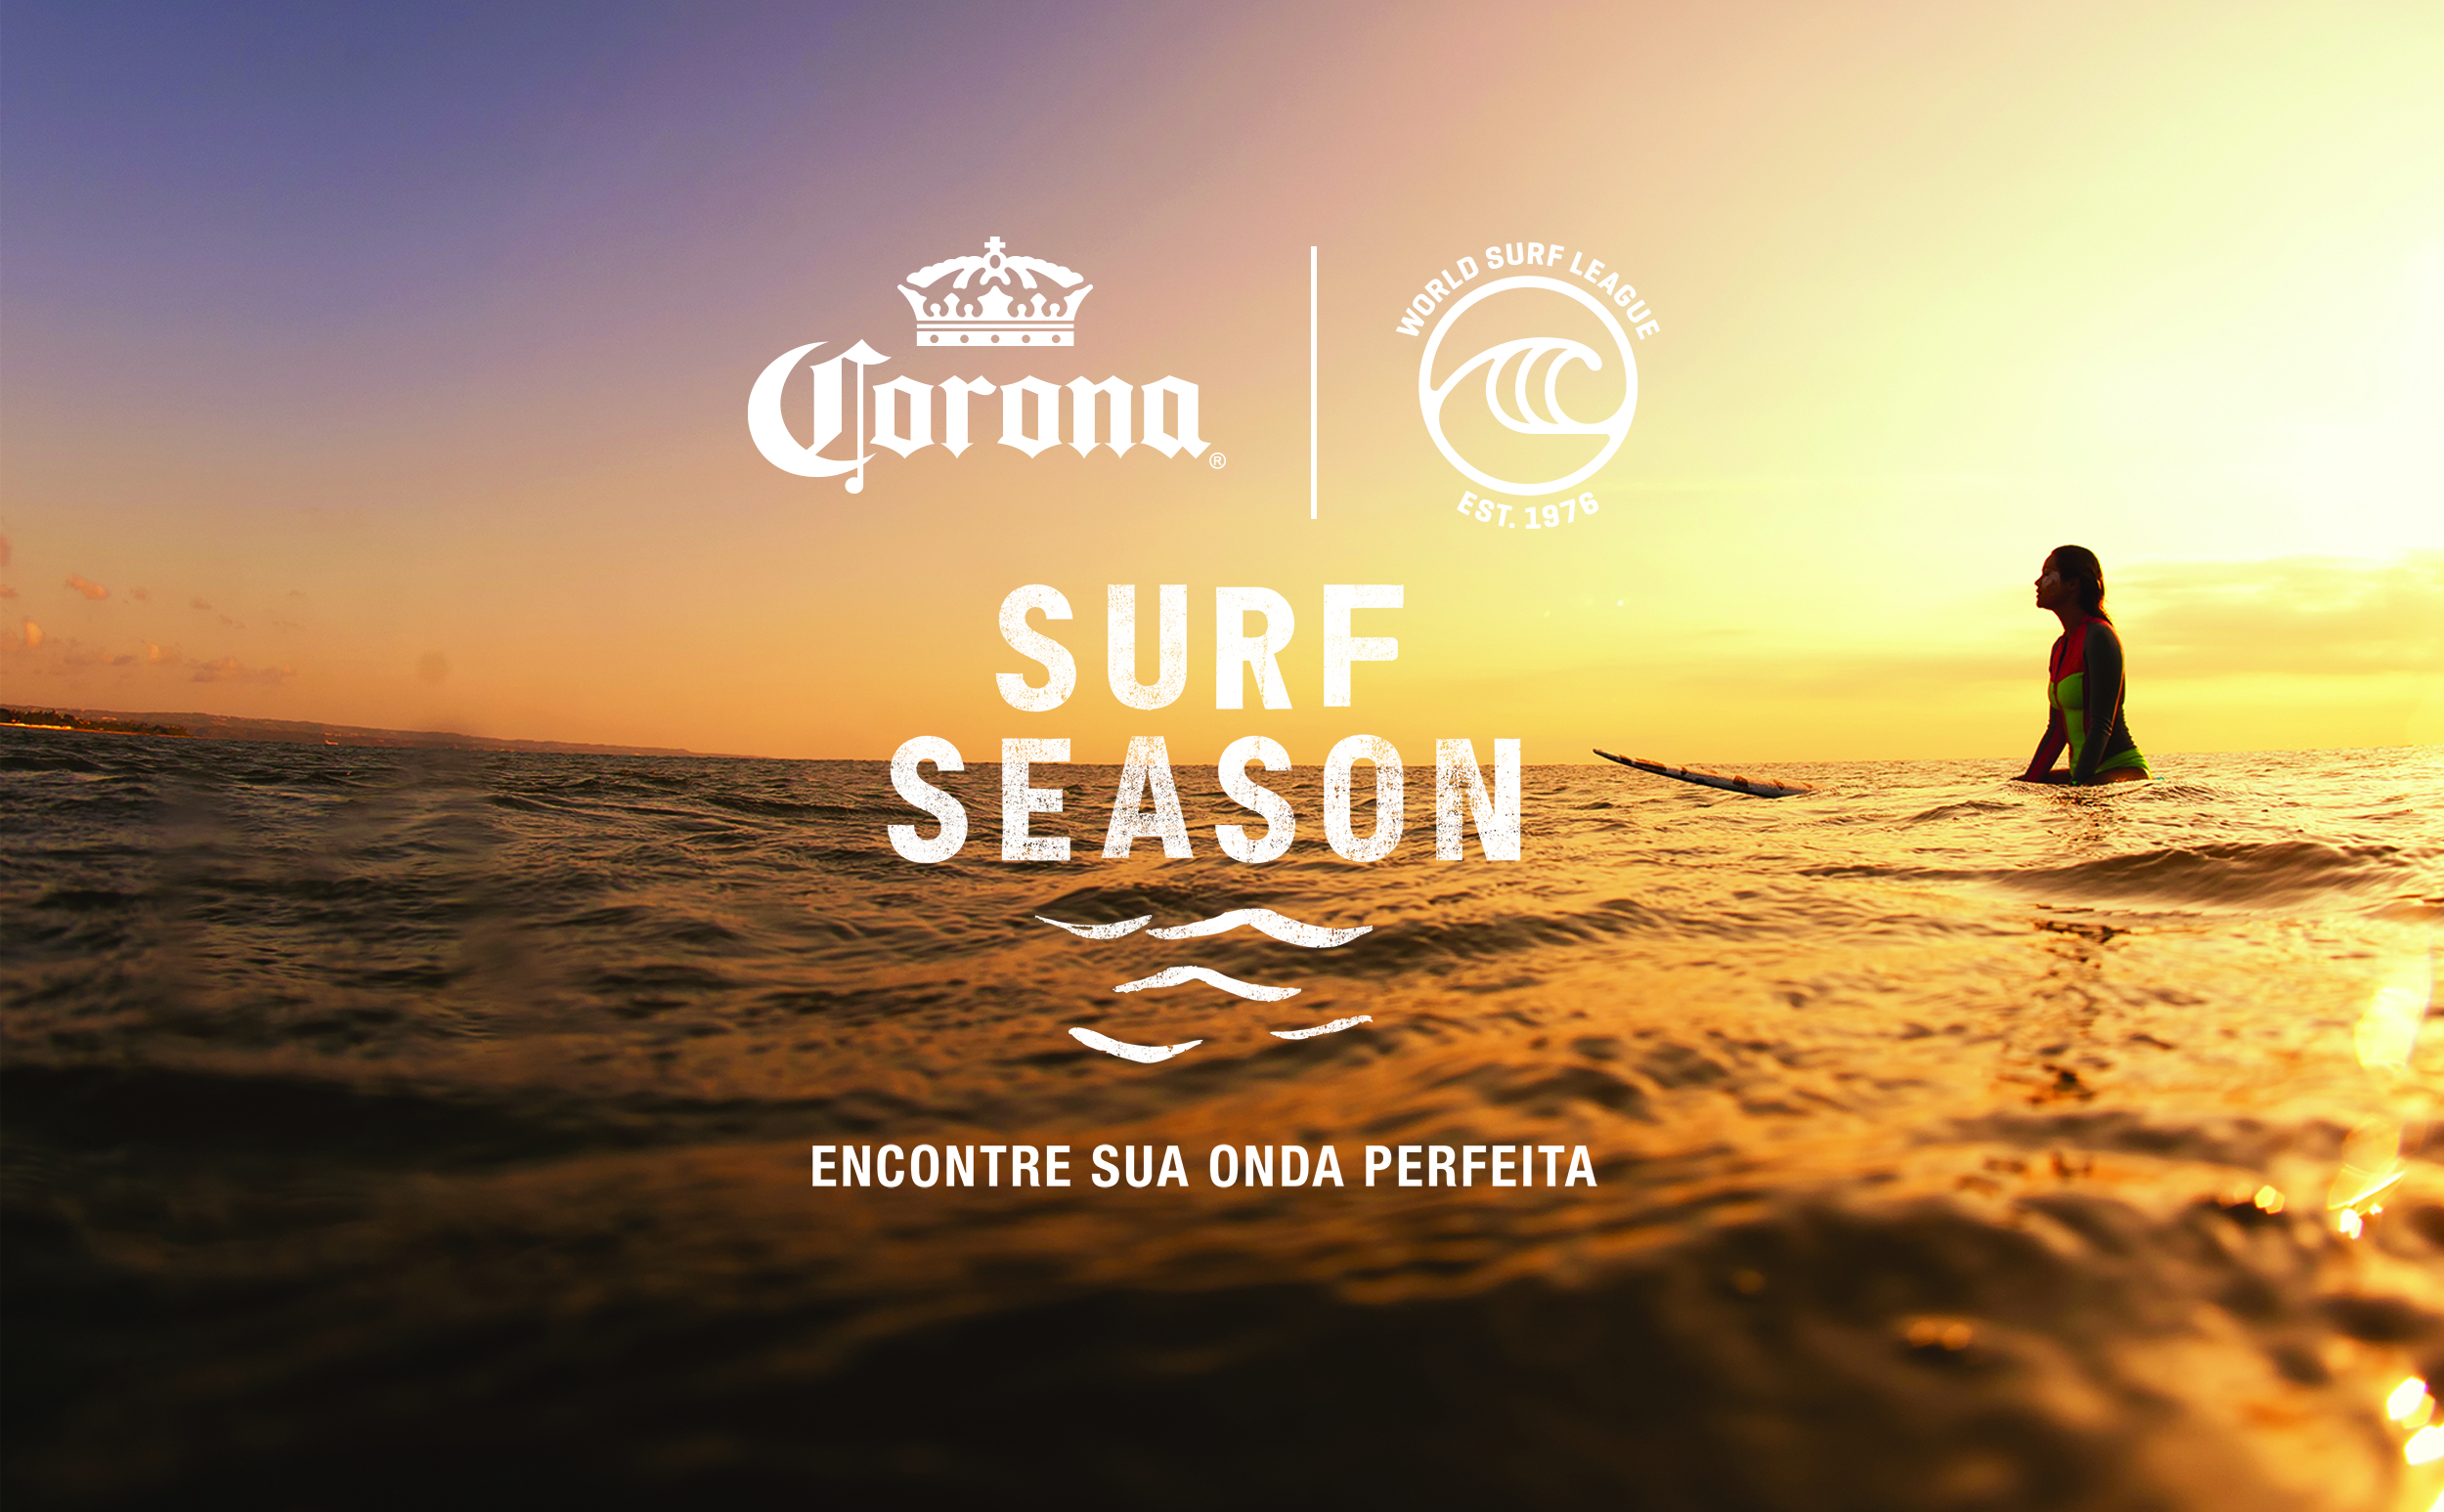 “Surf Season”: promoção da cerveja Corona sorteia itens exclusivos da marca, pranchas do Gabriel Medina